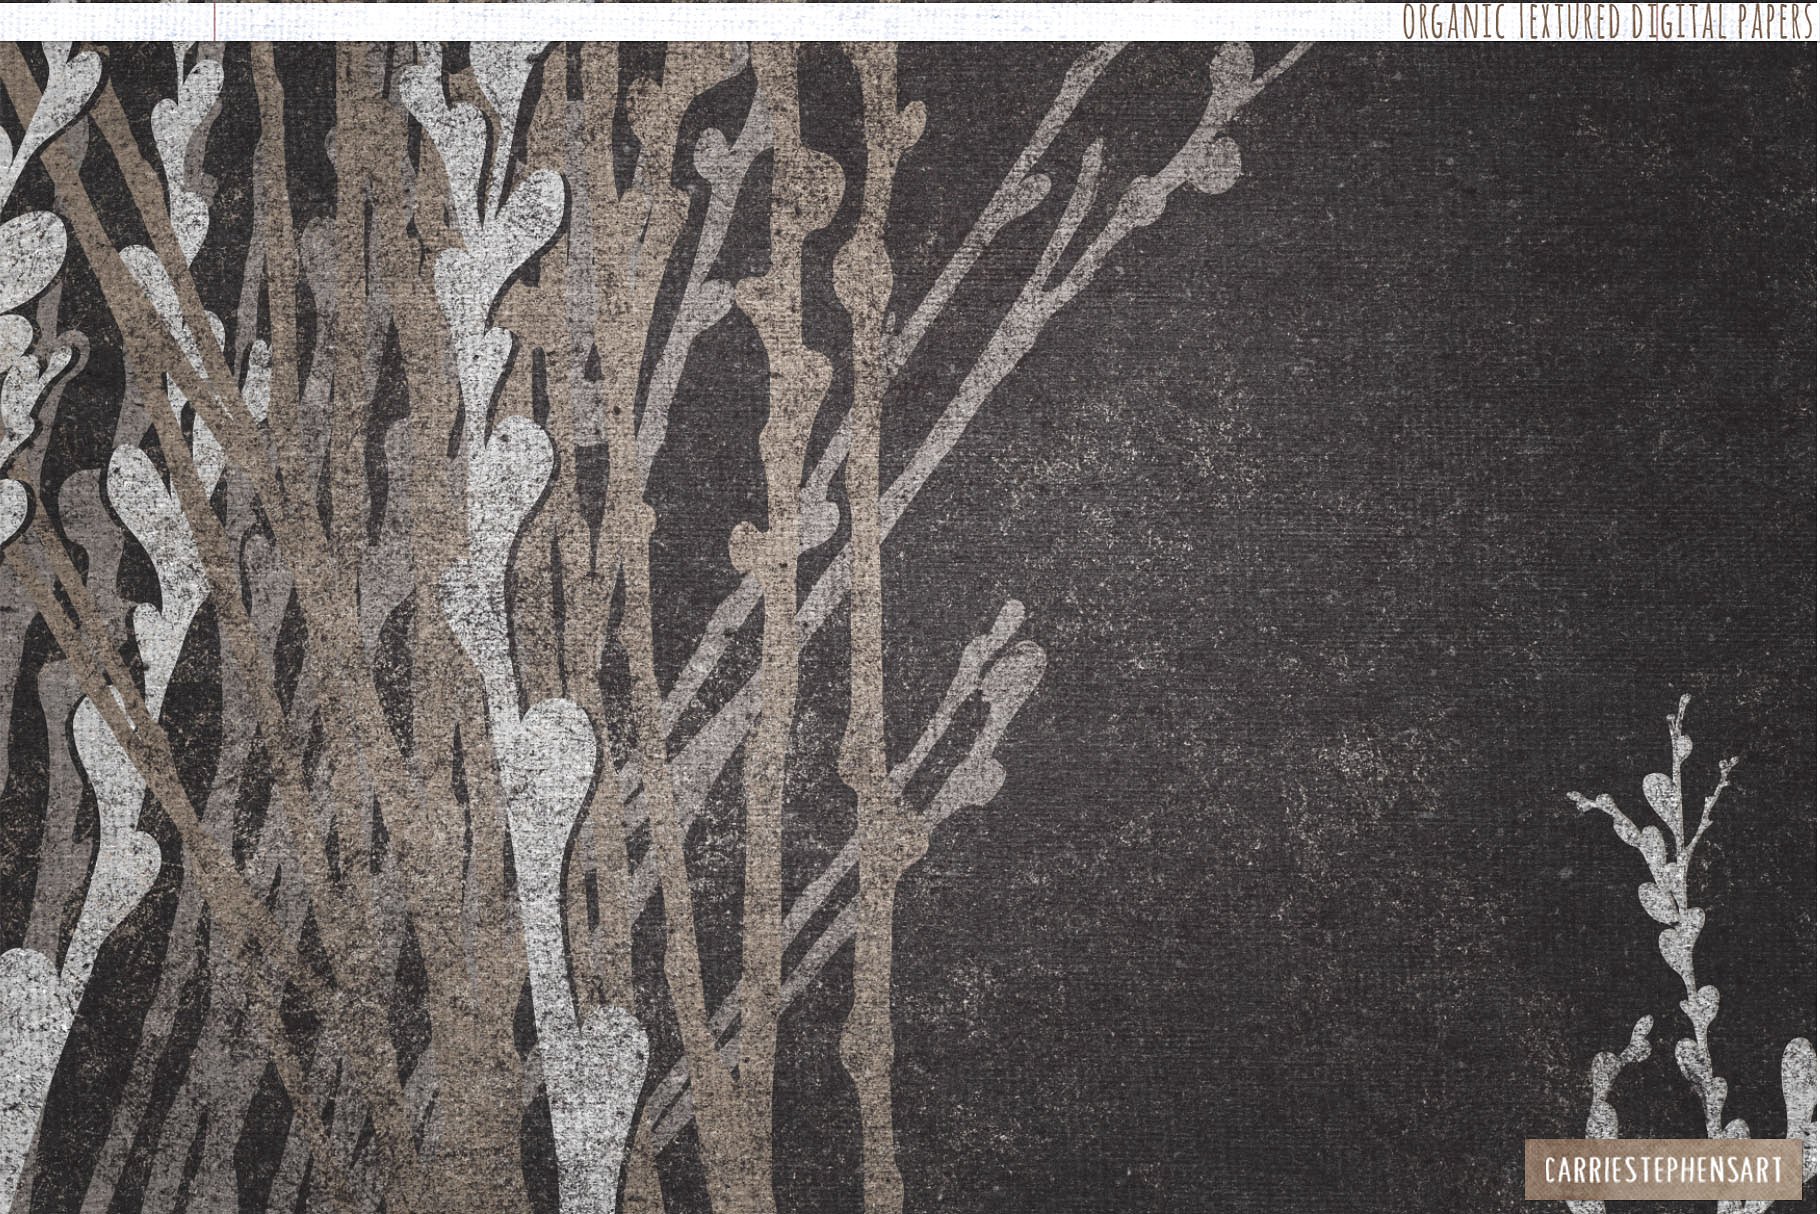 纯天然有机纹理背景 Natural Organic Textured Backgrounds插图(4)